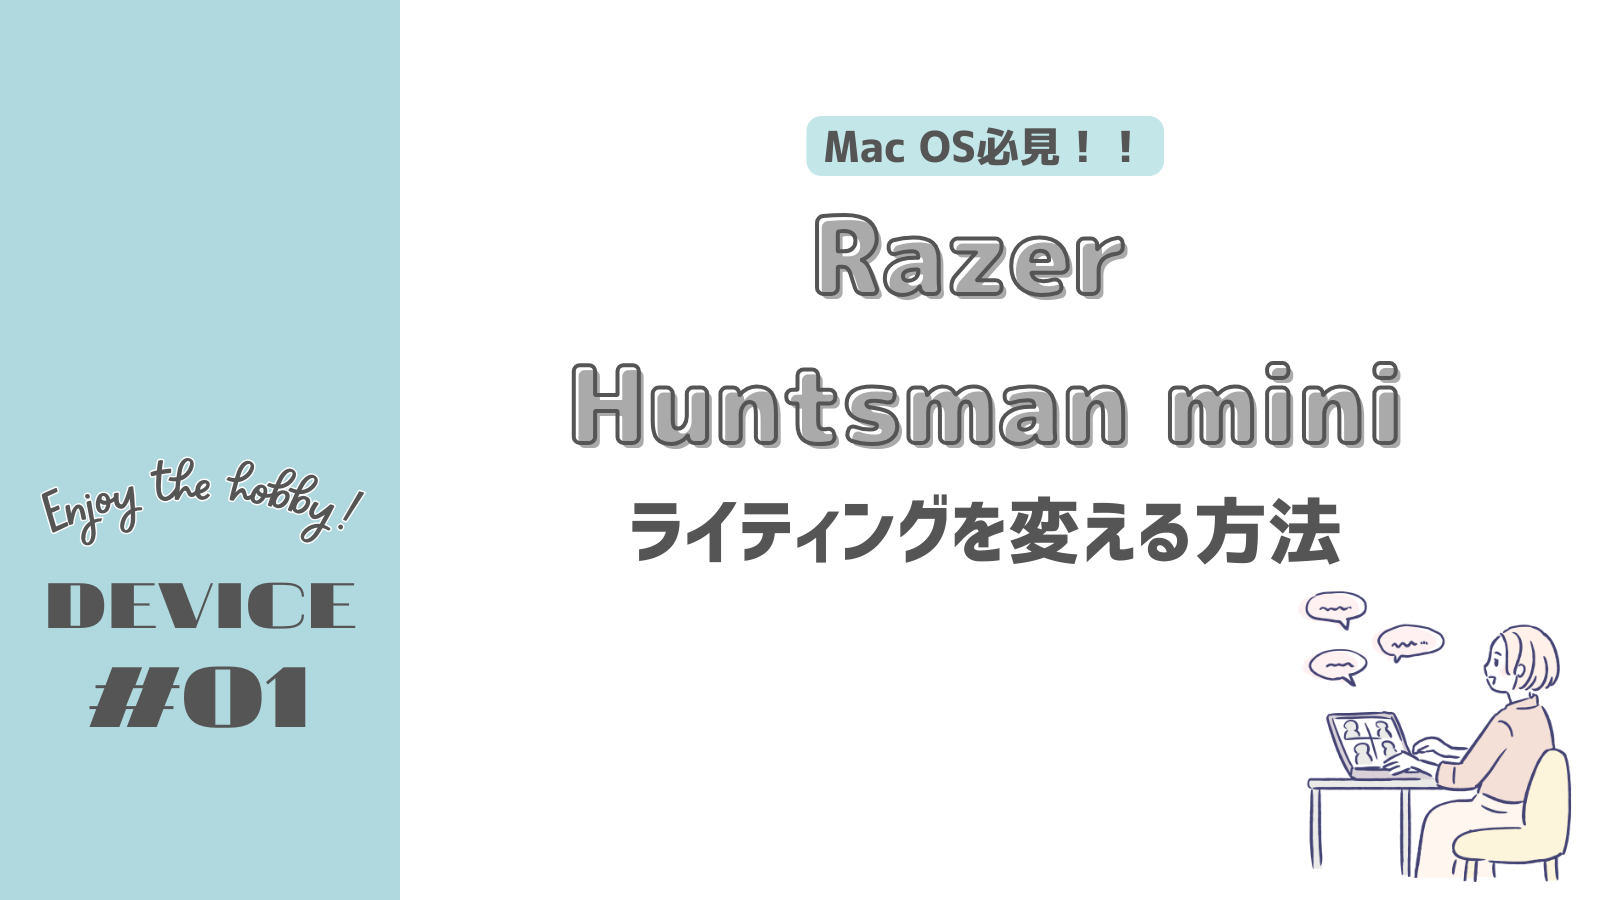 Razer Huntsman miniのライティングを変える方法